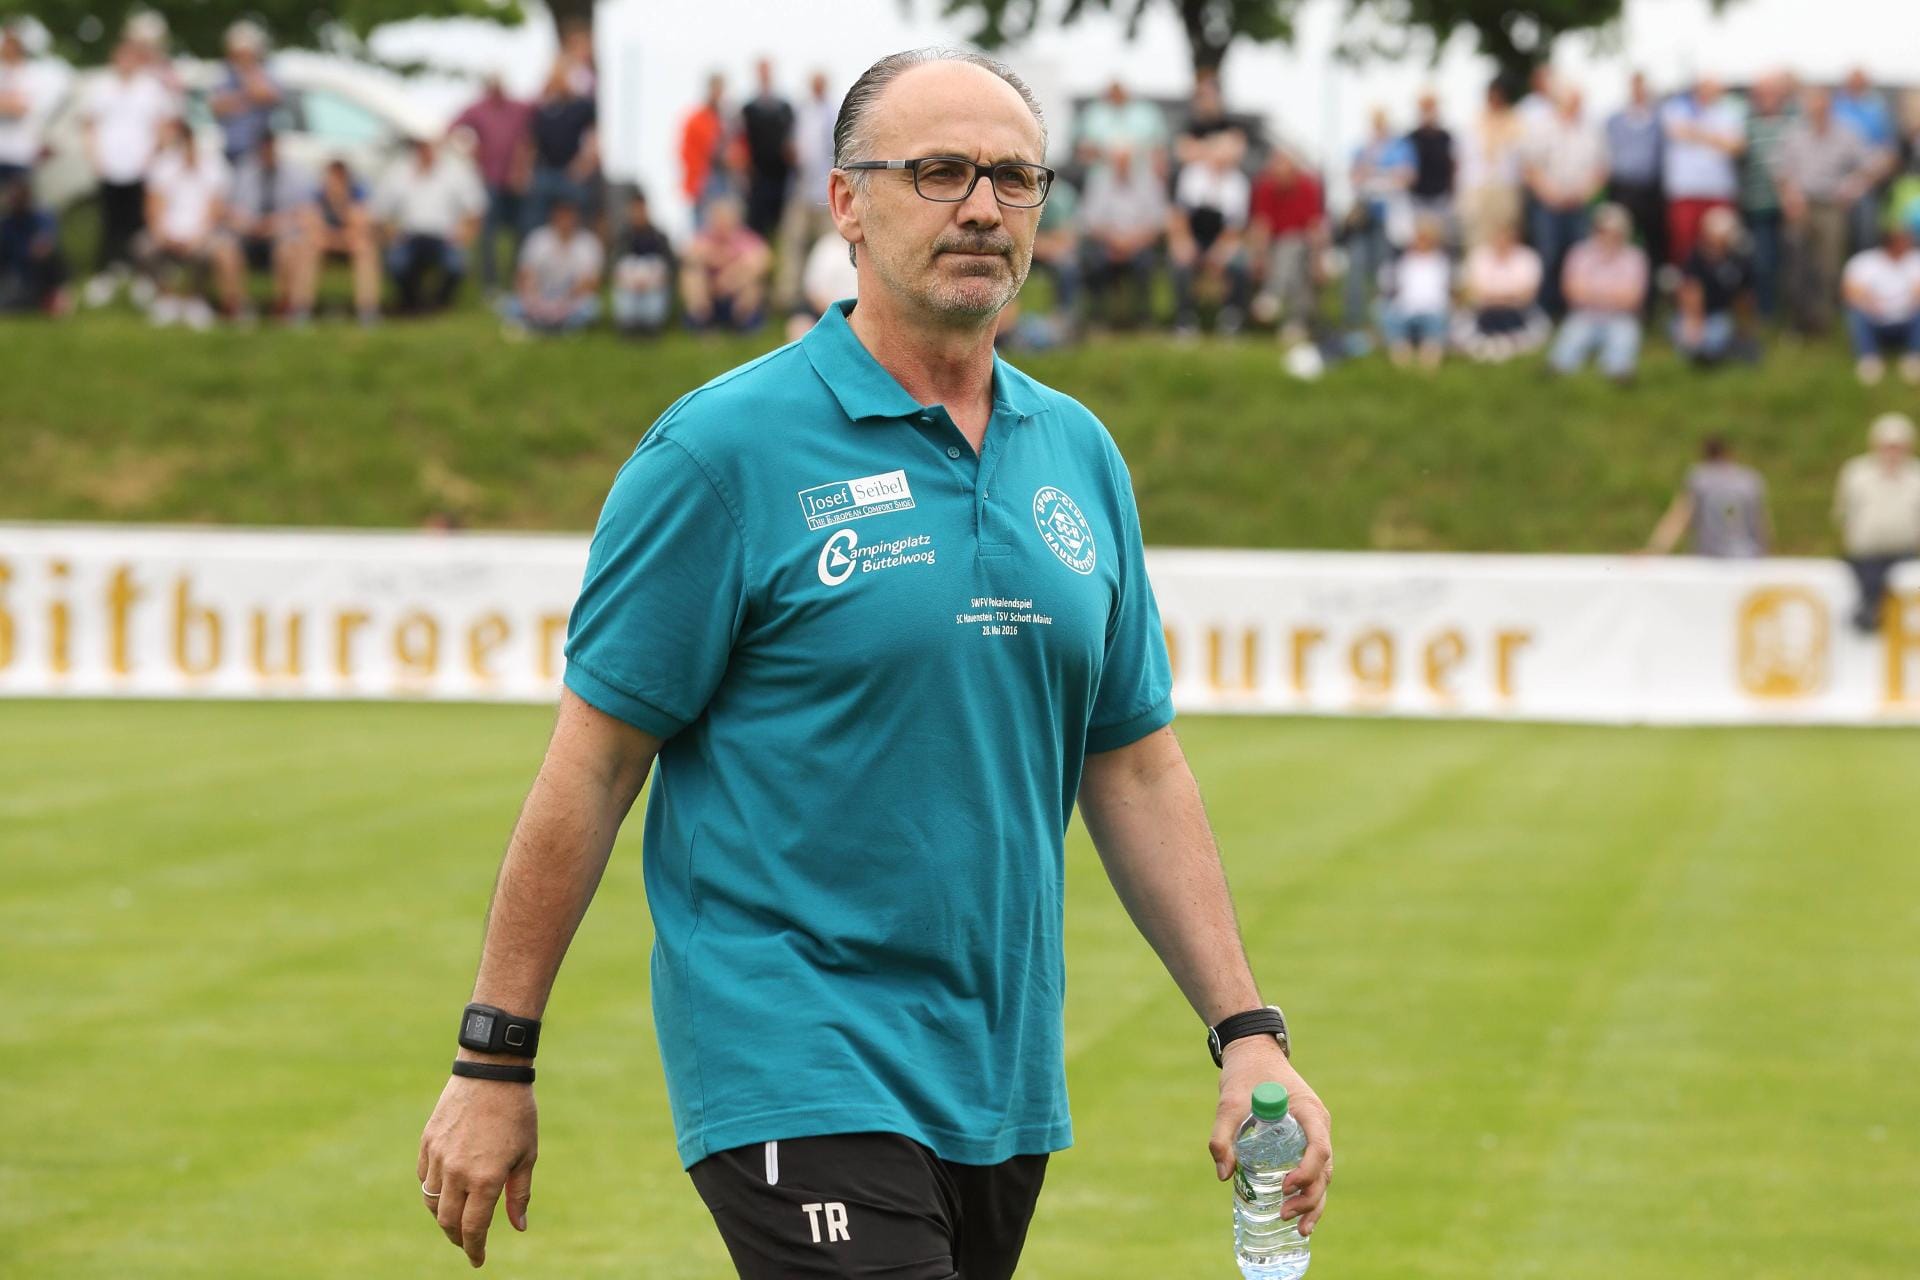 Jürgen Kohler war von 2001 bis 2003 Trainer der U21-Nationalmannschaft. Es folgten mehrere Jobs als Trainer und Sportdirektor bei verschiedenen Vereinen. Ab der Saison 2016/2017 wird er Trainer von VfL Alfter. Der Klub spielt in der Verbandsliga Mittelrhein.